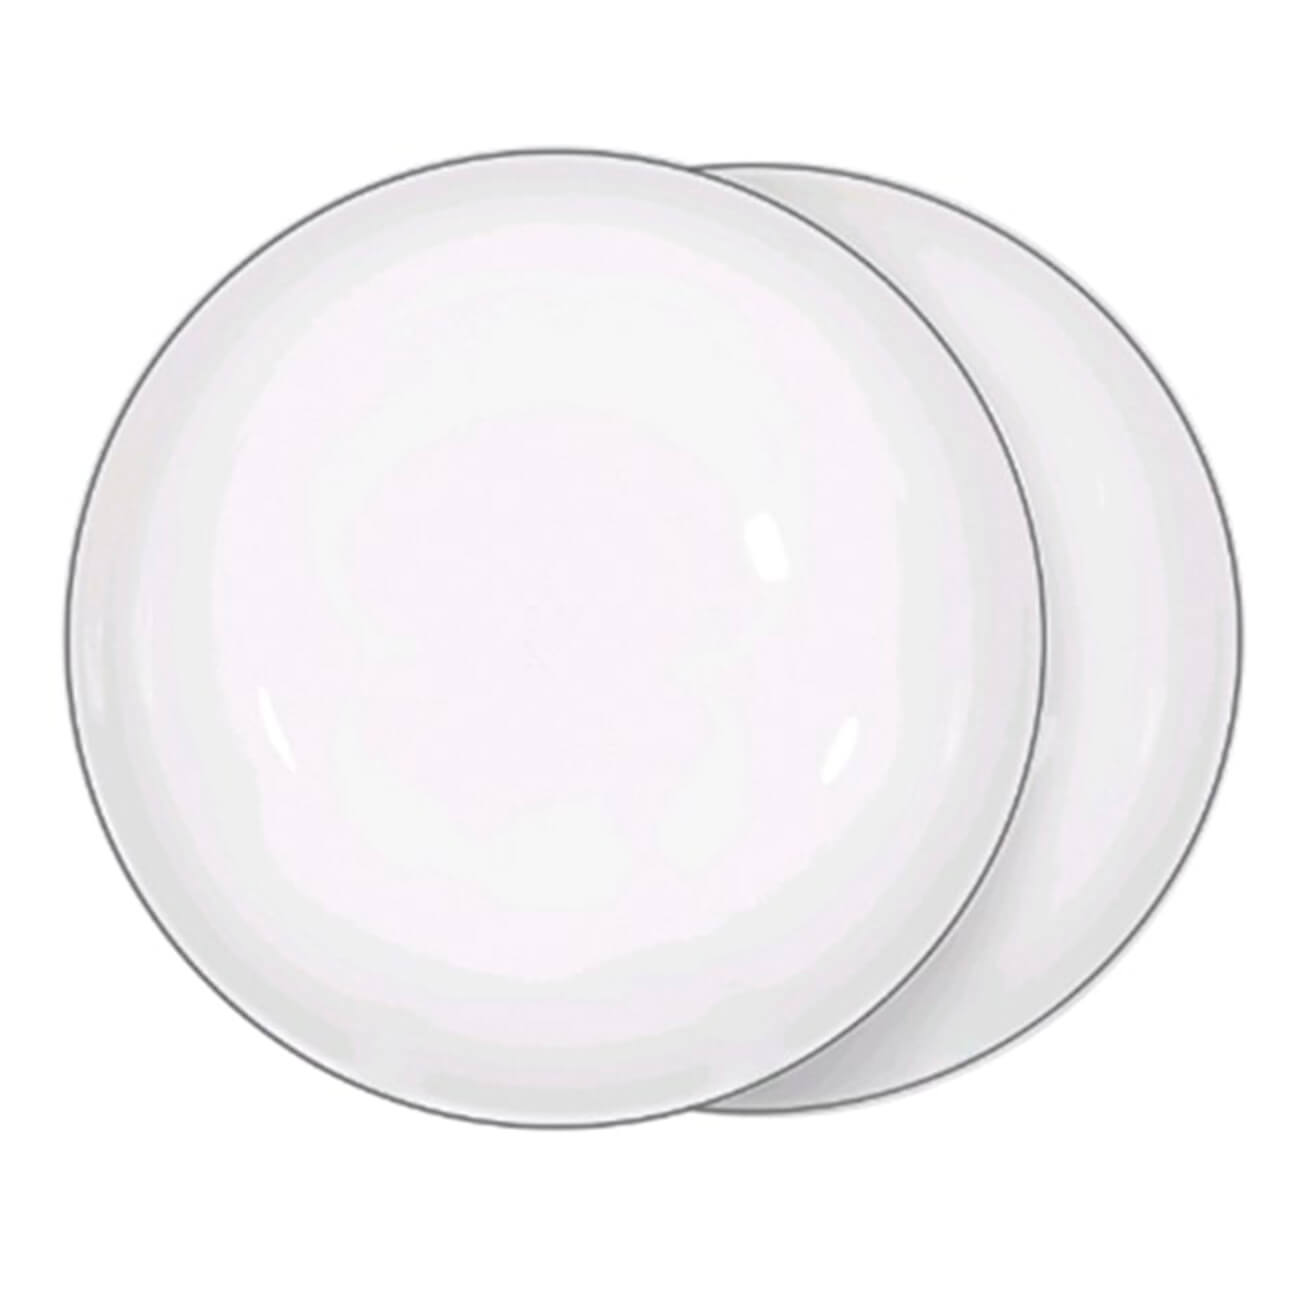 Тарелка суповая, 20х5 см, 2 шт, фарфор F, белая, Ideal silver тарелка суповая easy life капри 21 5 см